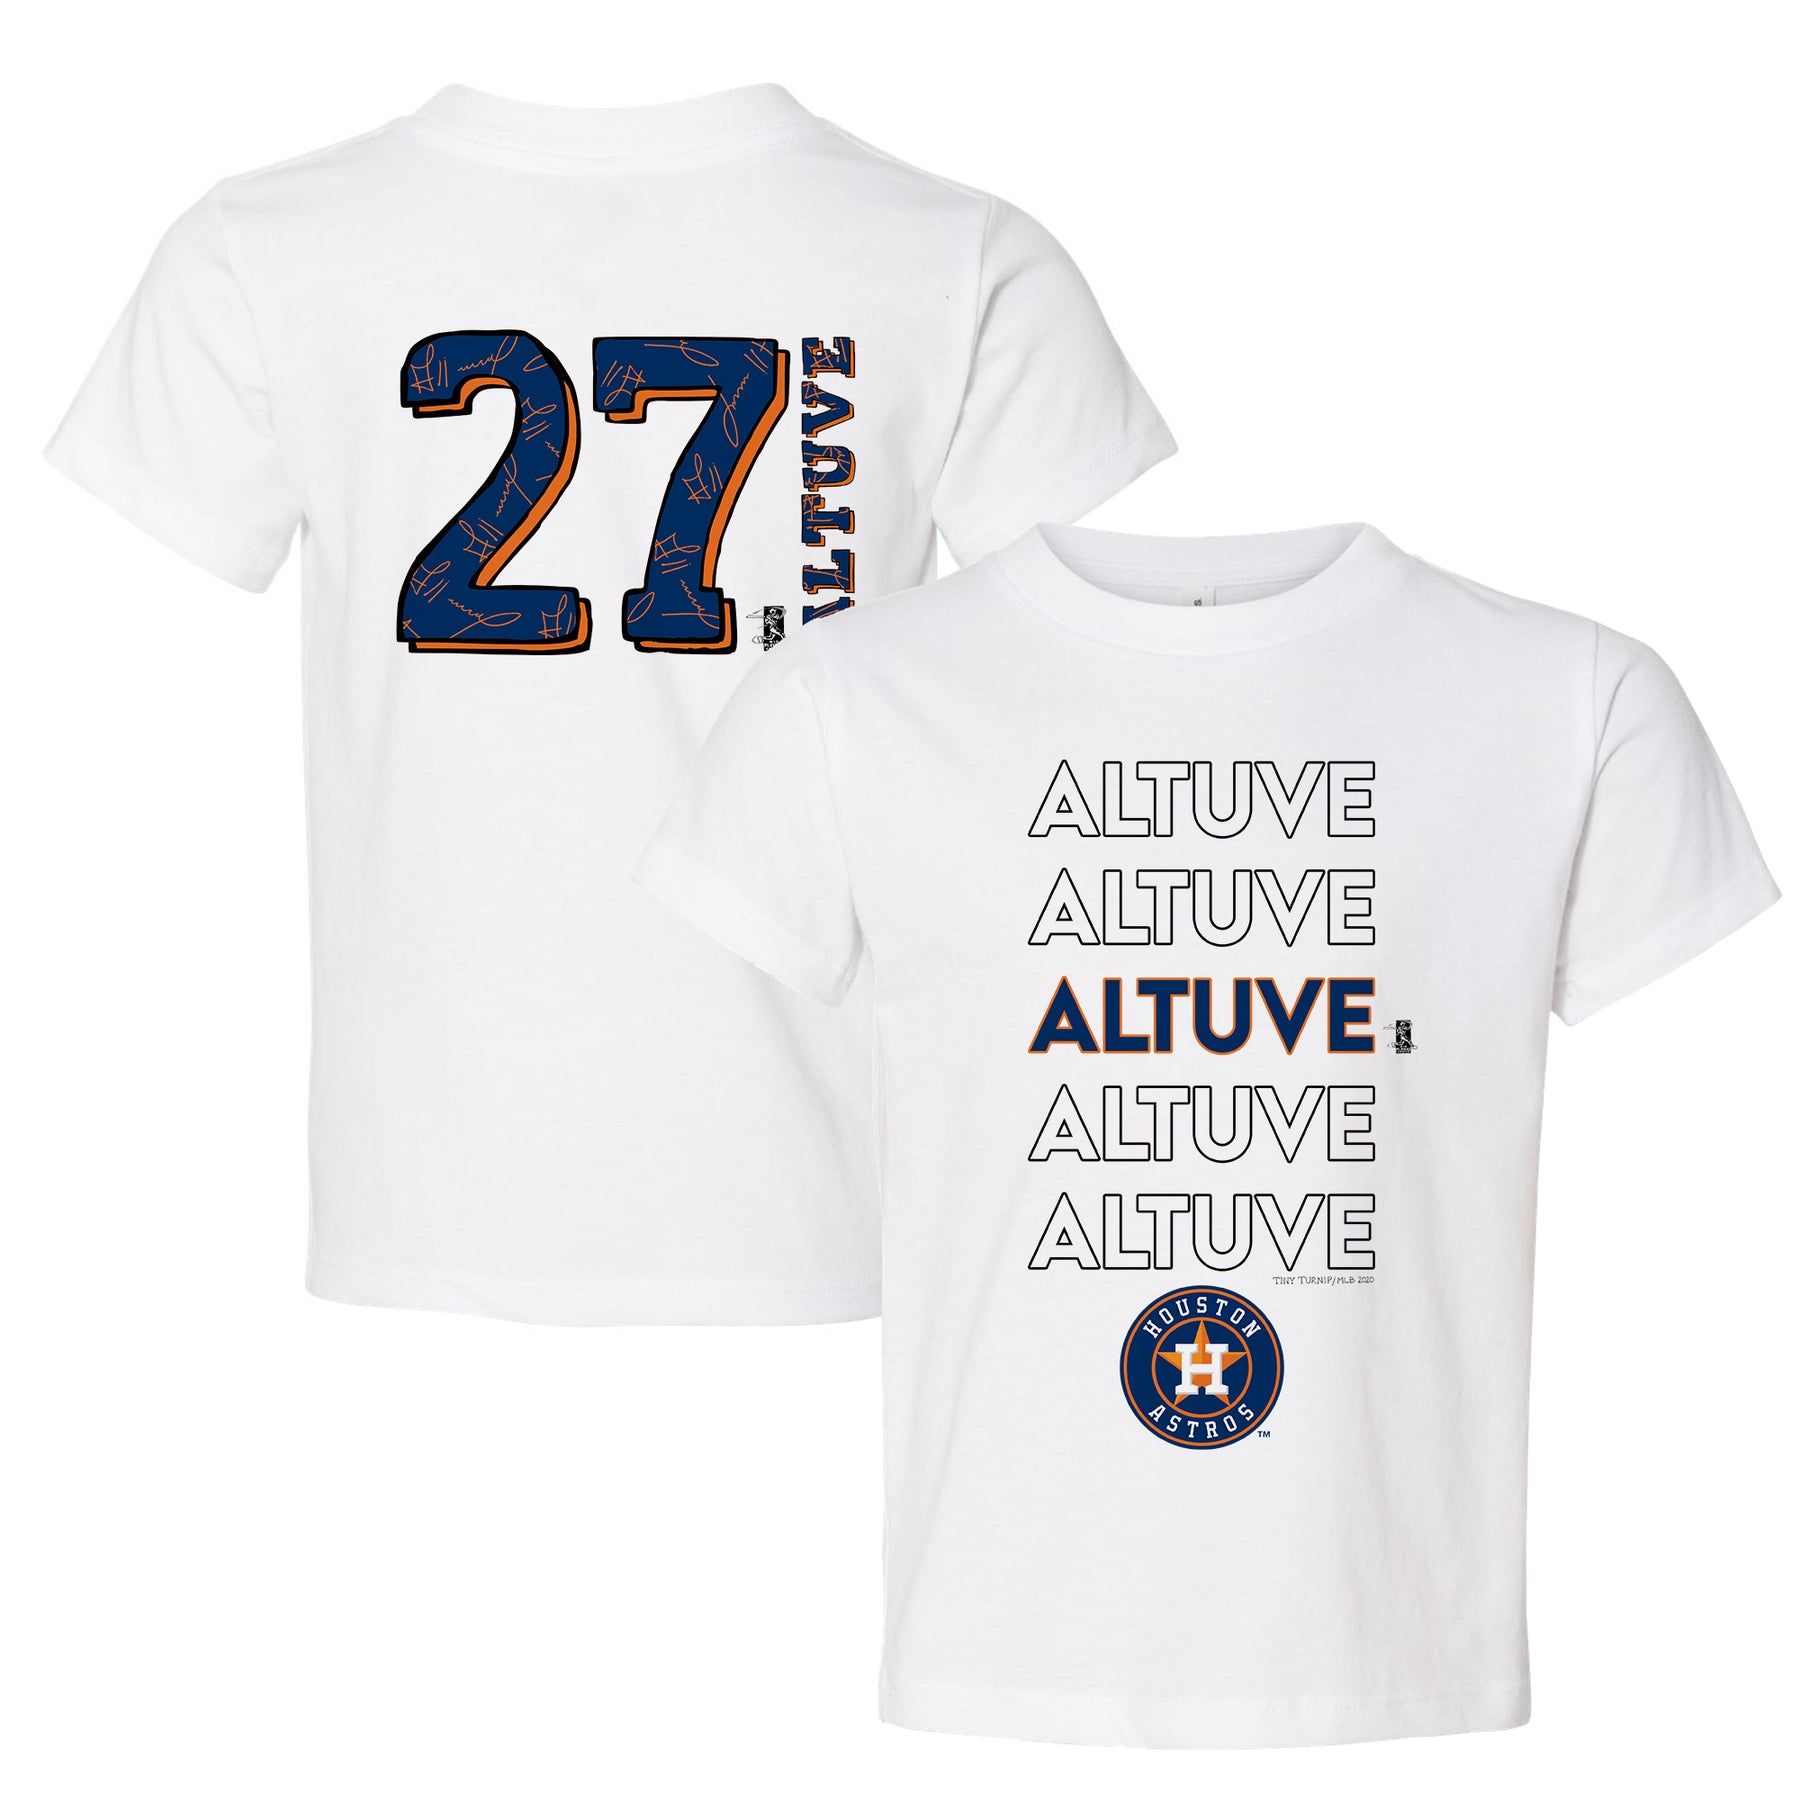 Astros Bleach Shirt 